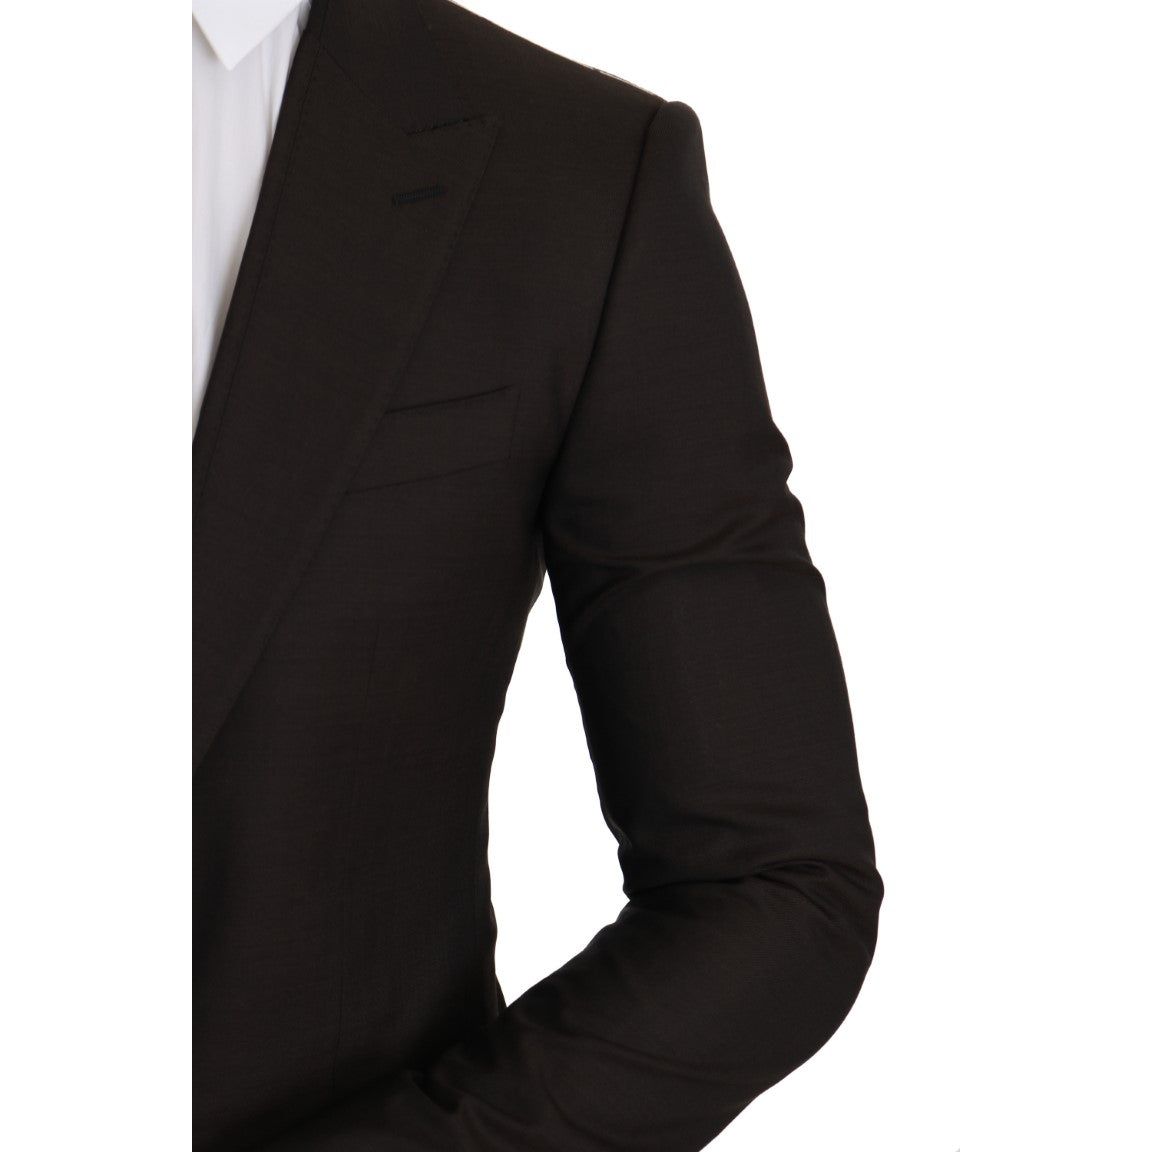 Dolce & Gabbana | Brown Wool SICILIA Jacket Coat Blazer | McRichard Designer Brands